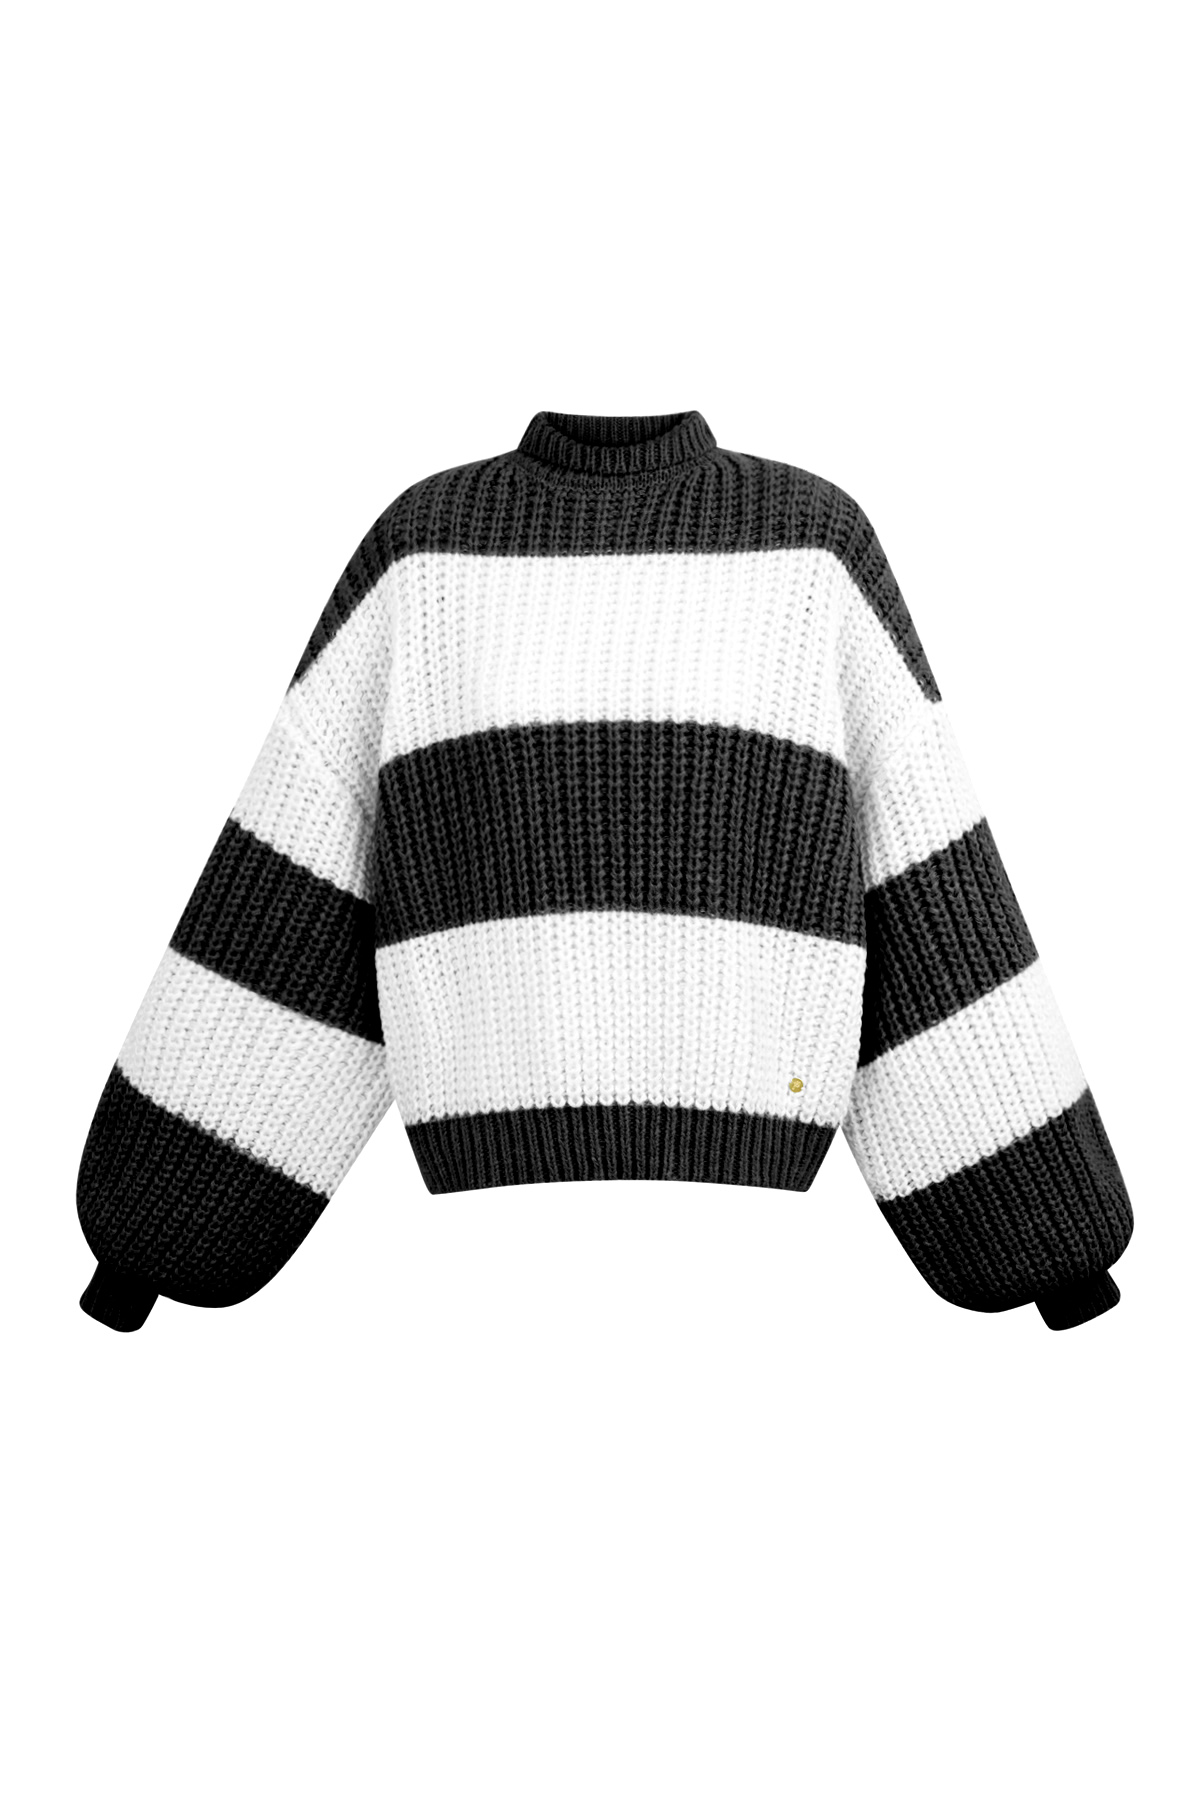 Caldo maglione a righe lavorato a maglia - bianco e nero h5 